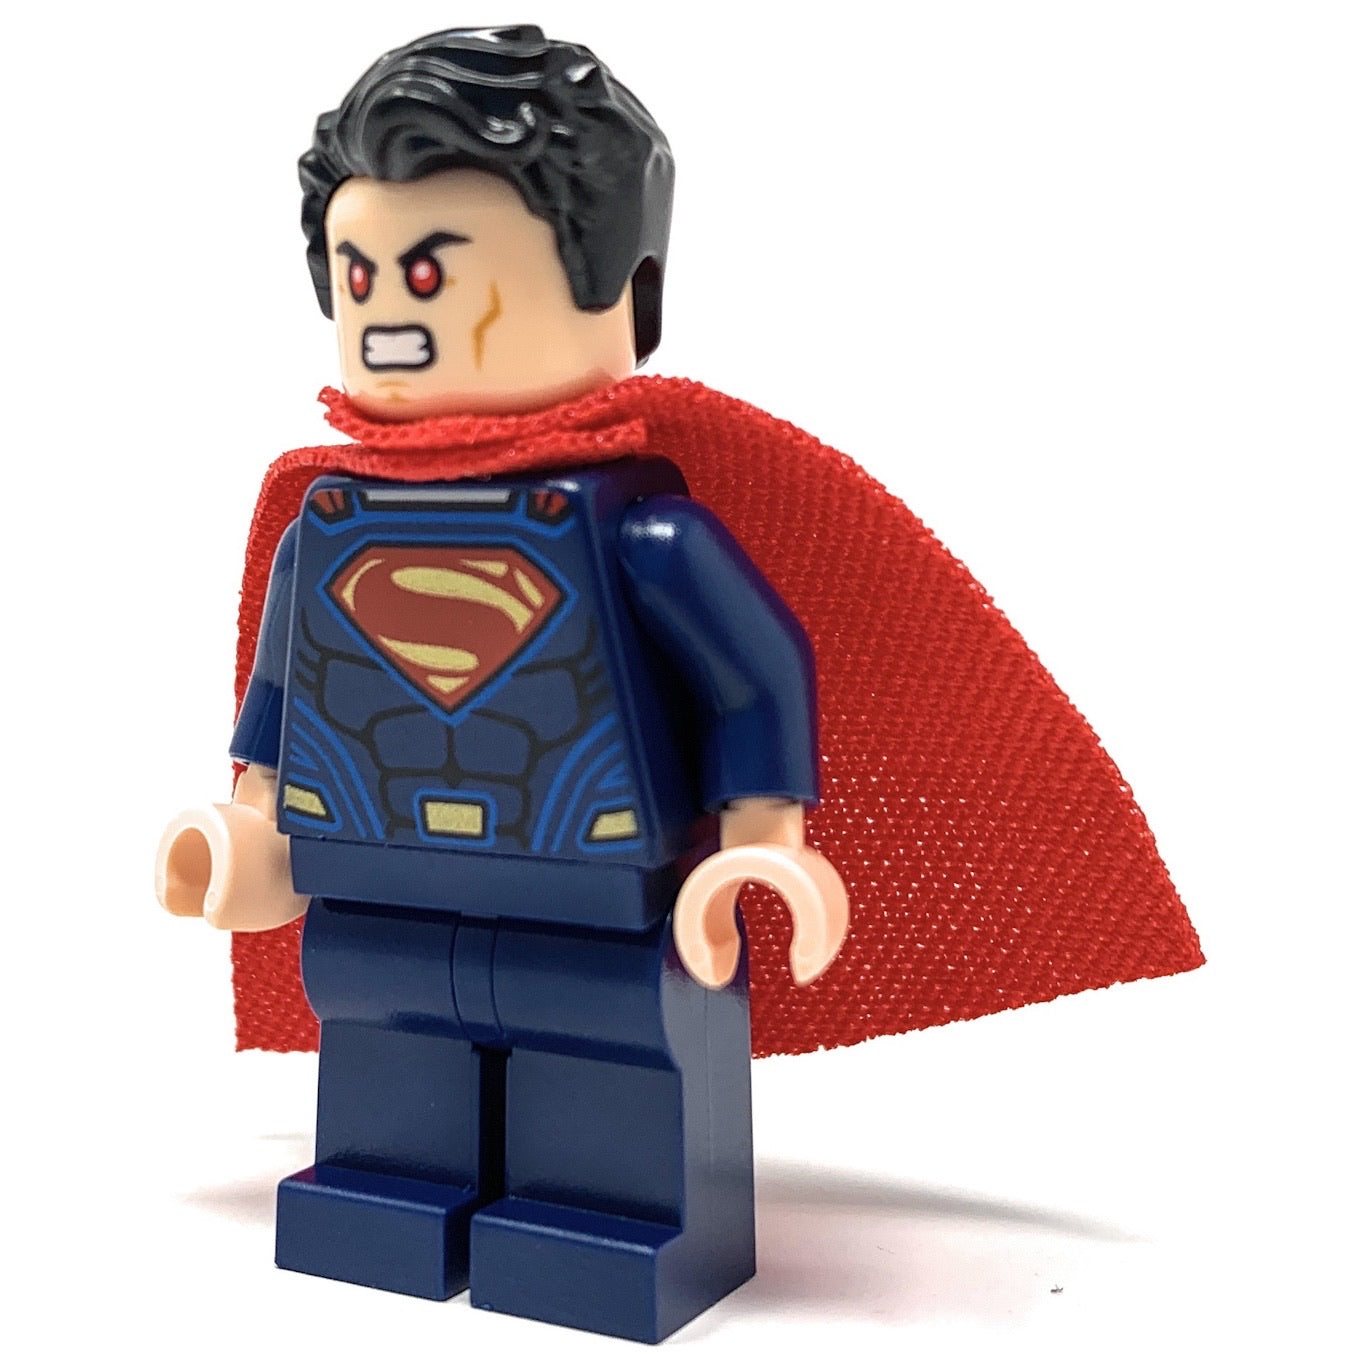 Superman (Batman V Superman) - LEGO DC Comics Minifigure (2016) – The Brick  Show Shop